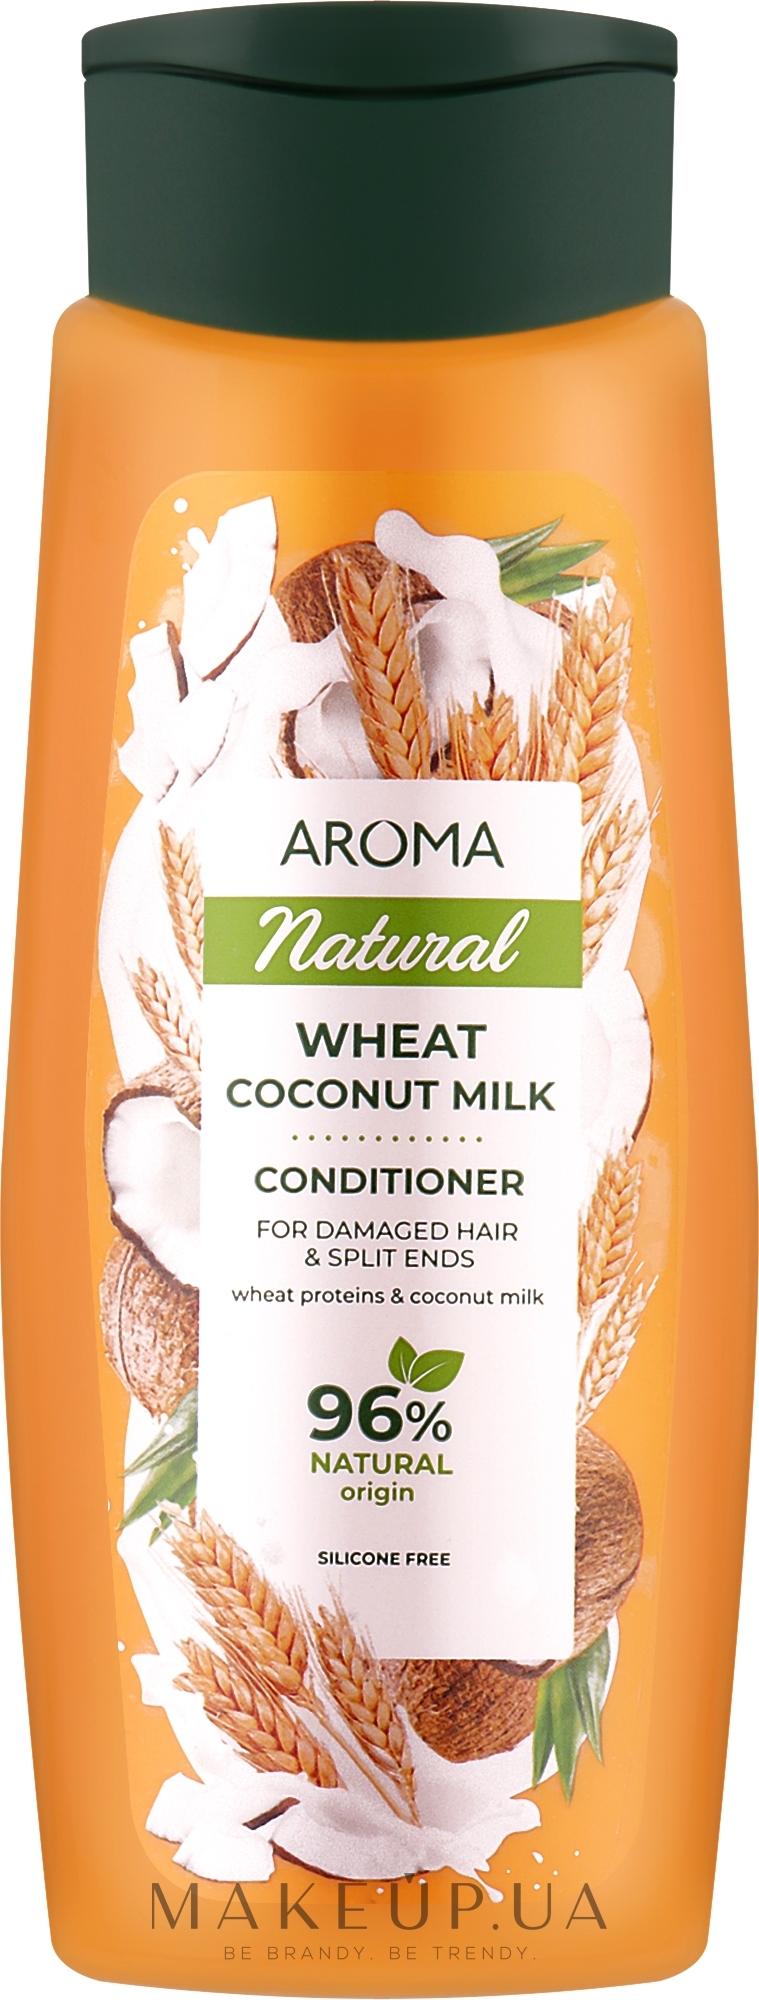 Кондиционер "Пшеница и кокосовое молоко" для поврежденных волос и секущихся кончиков - Aroma Natural Conditioner, Wheat Coconut Milk For Damaged Hair & Split Ends  — фото 400ml